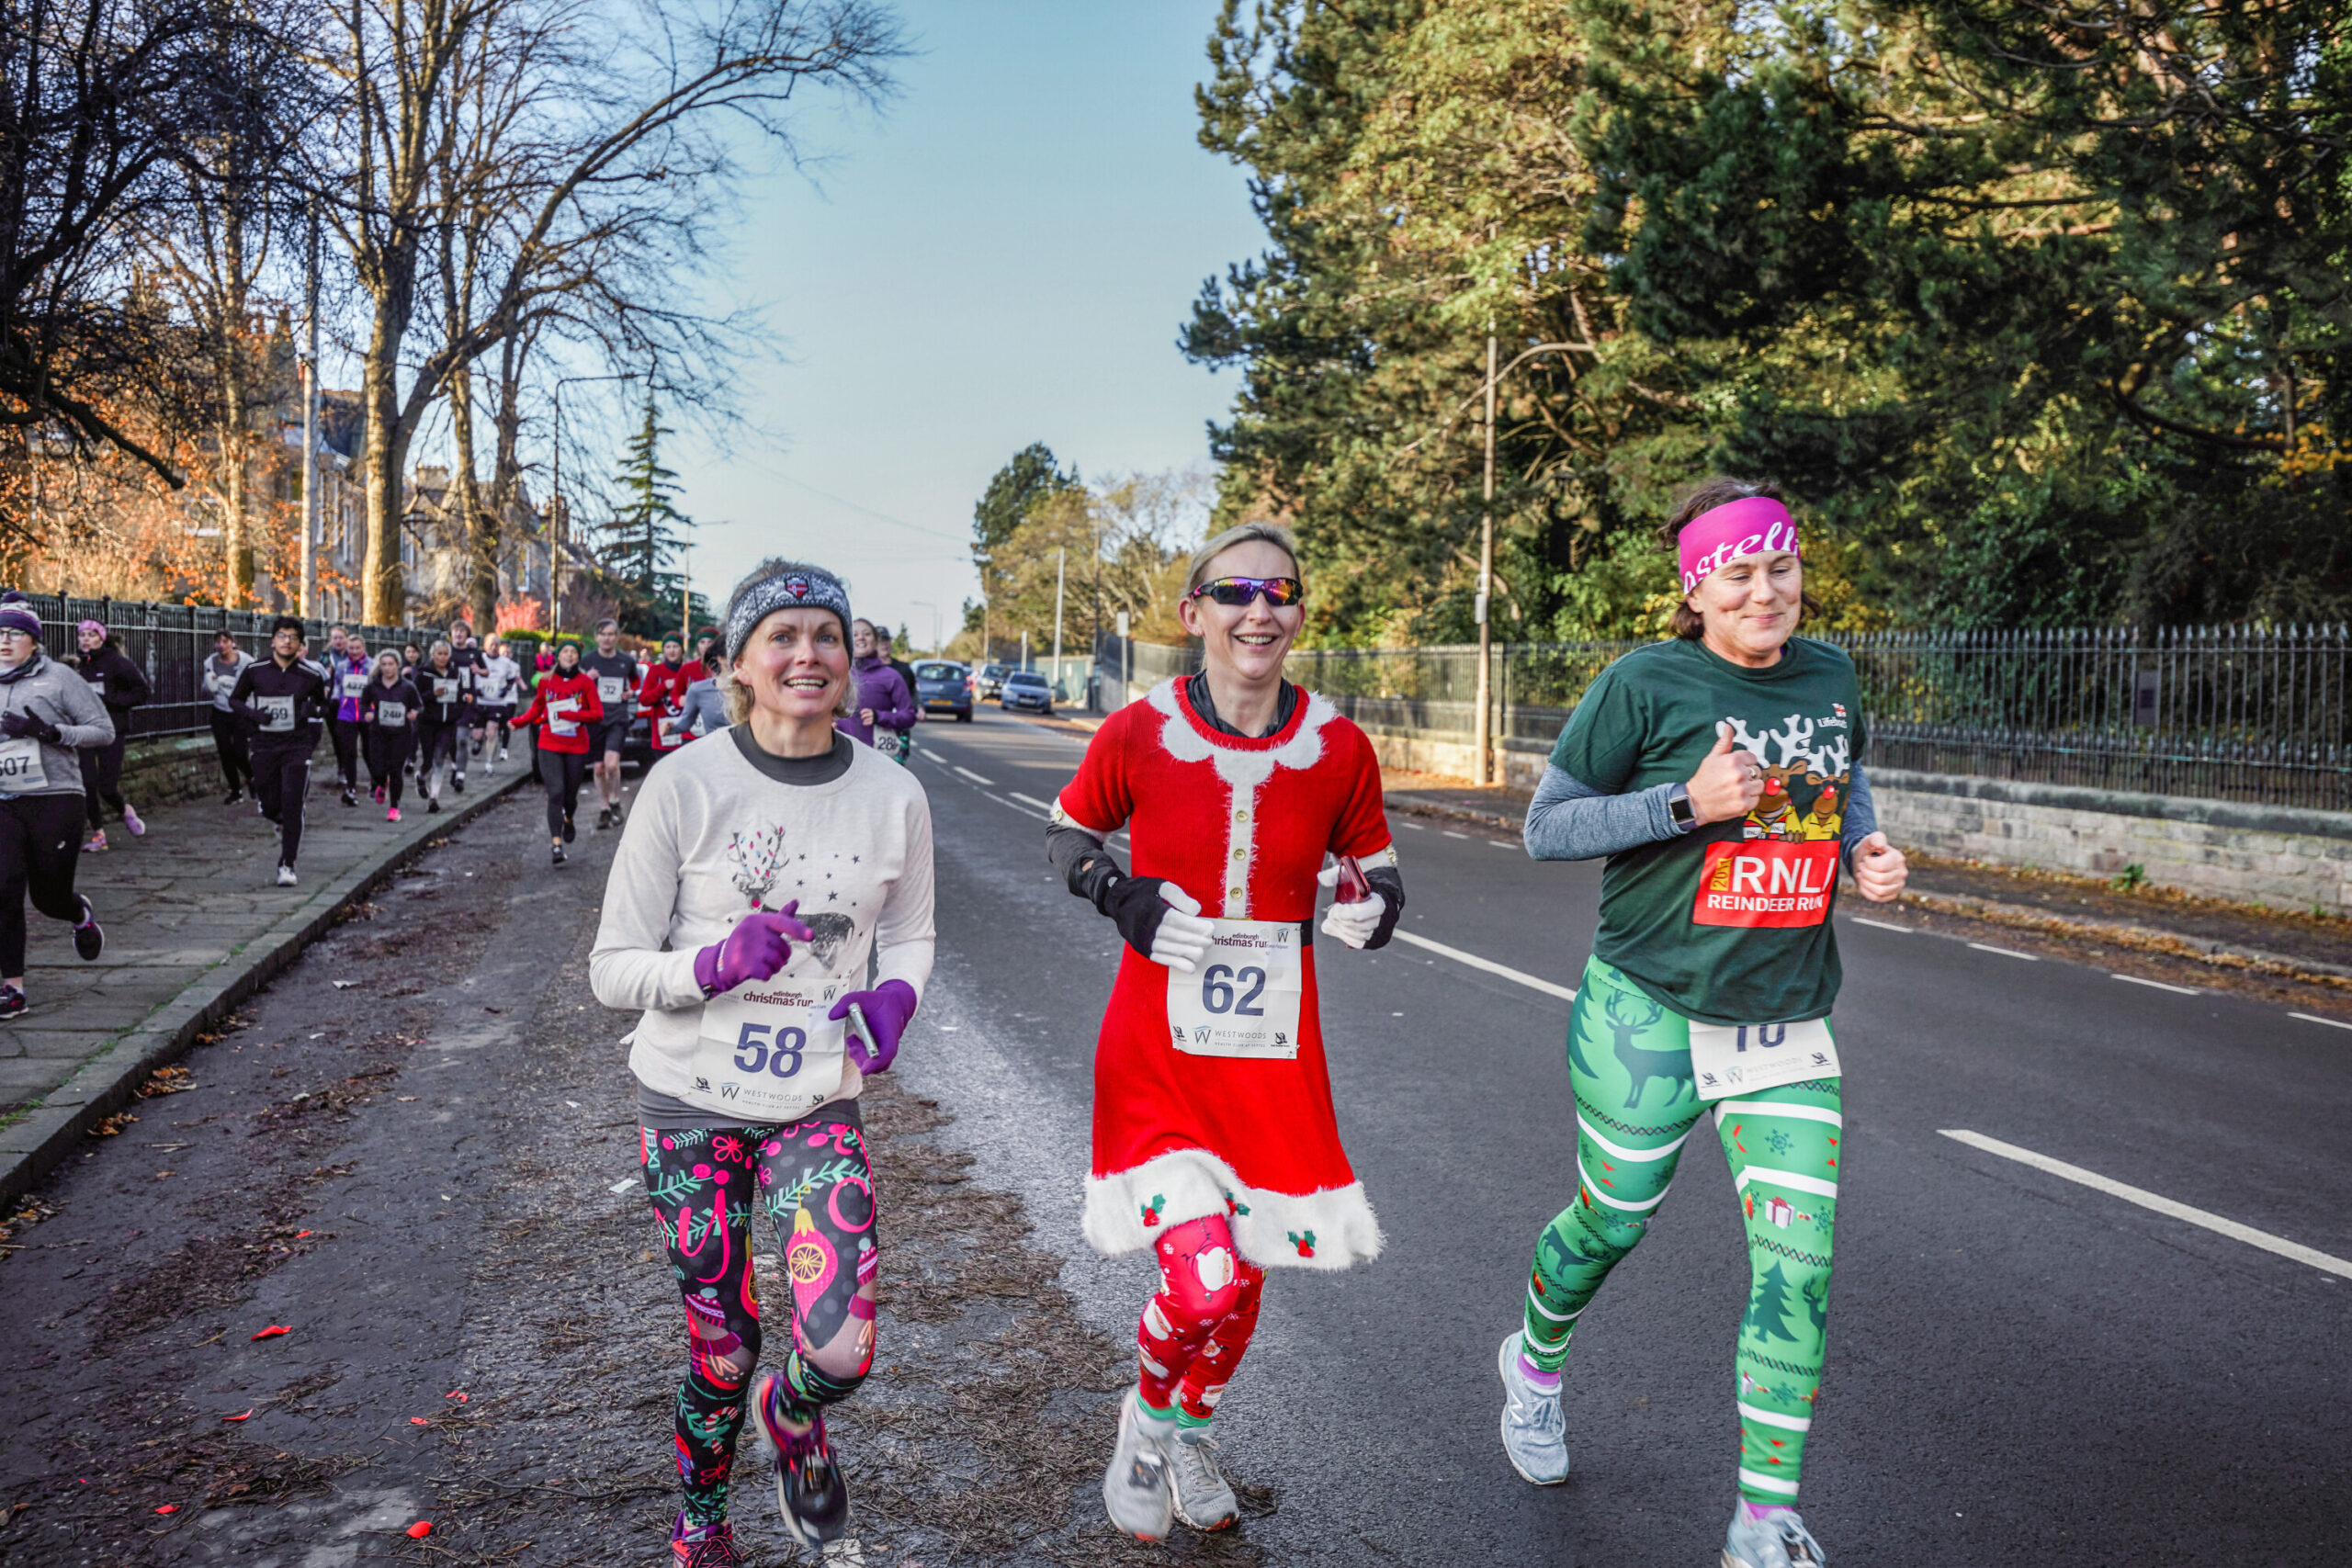 The Christmas 5K and 10K runs in Inverleith Park, Edinburgh